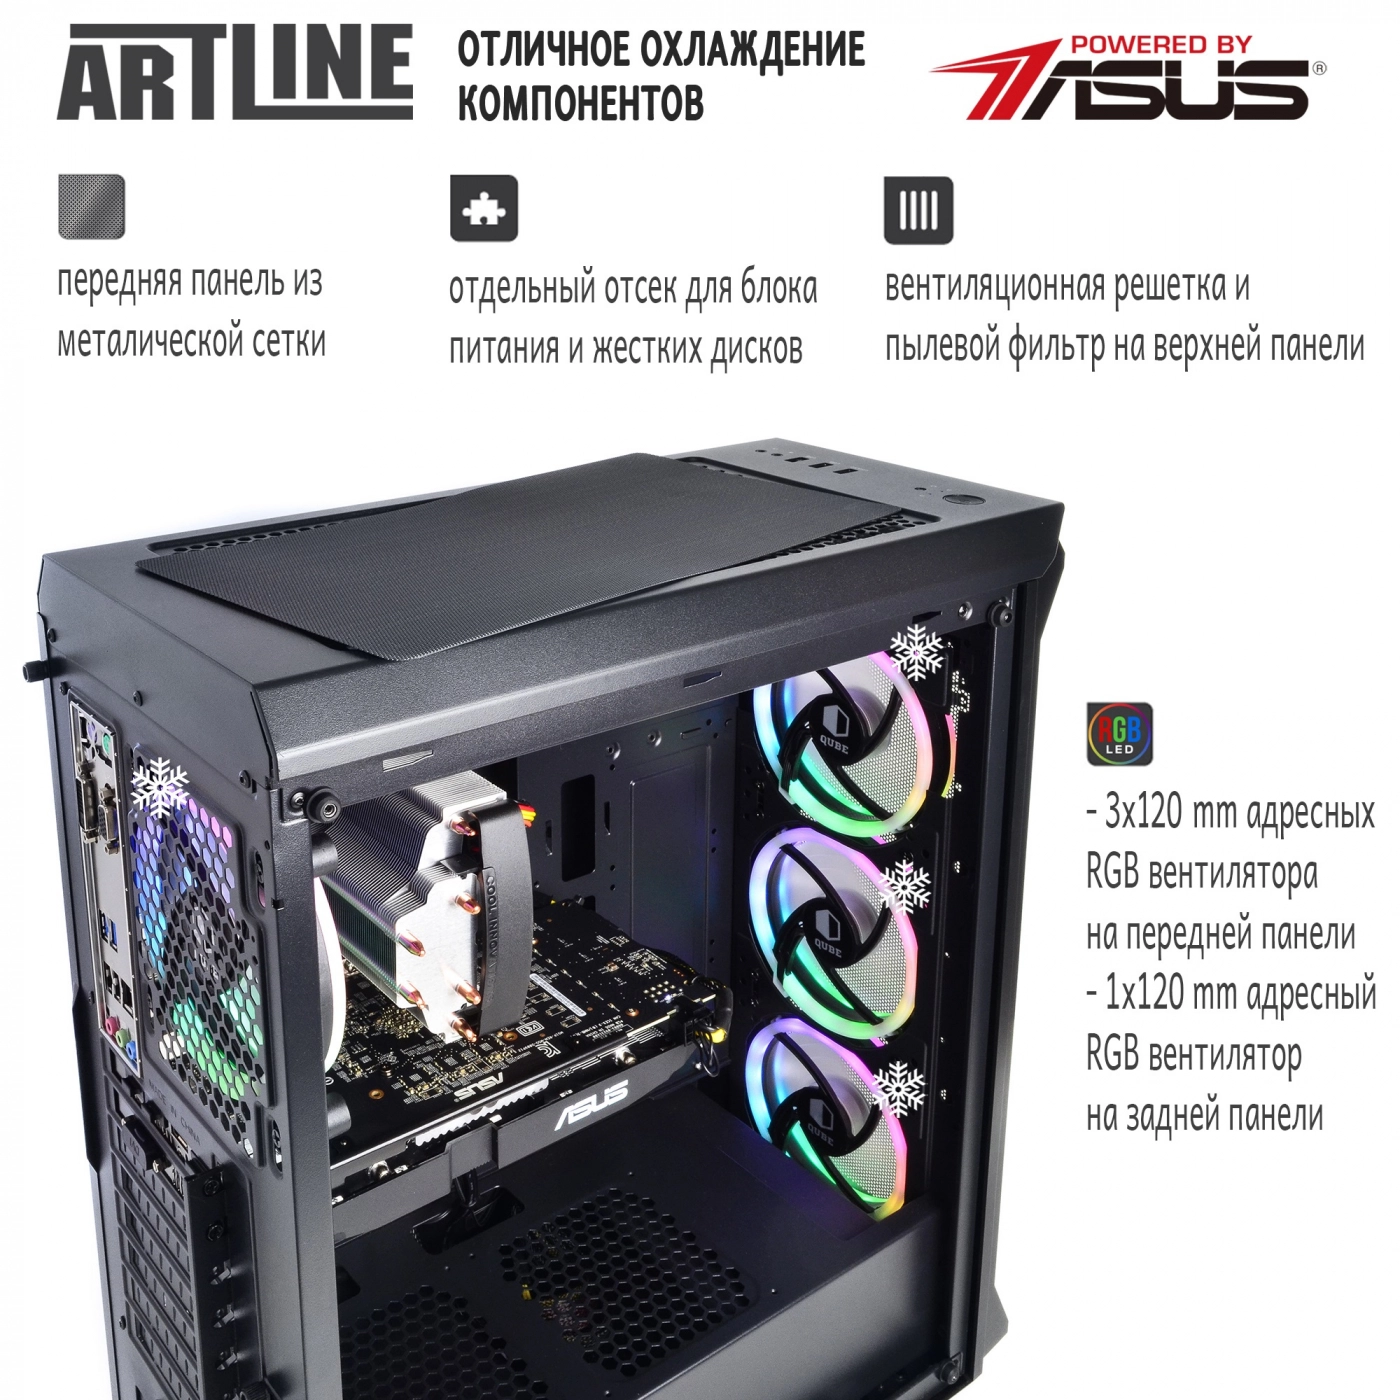 Купить Компьютер ARTLINE Gaming X77v32 - фото 2